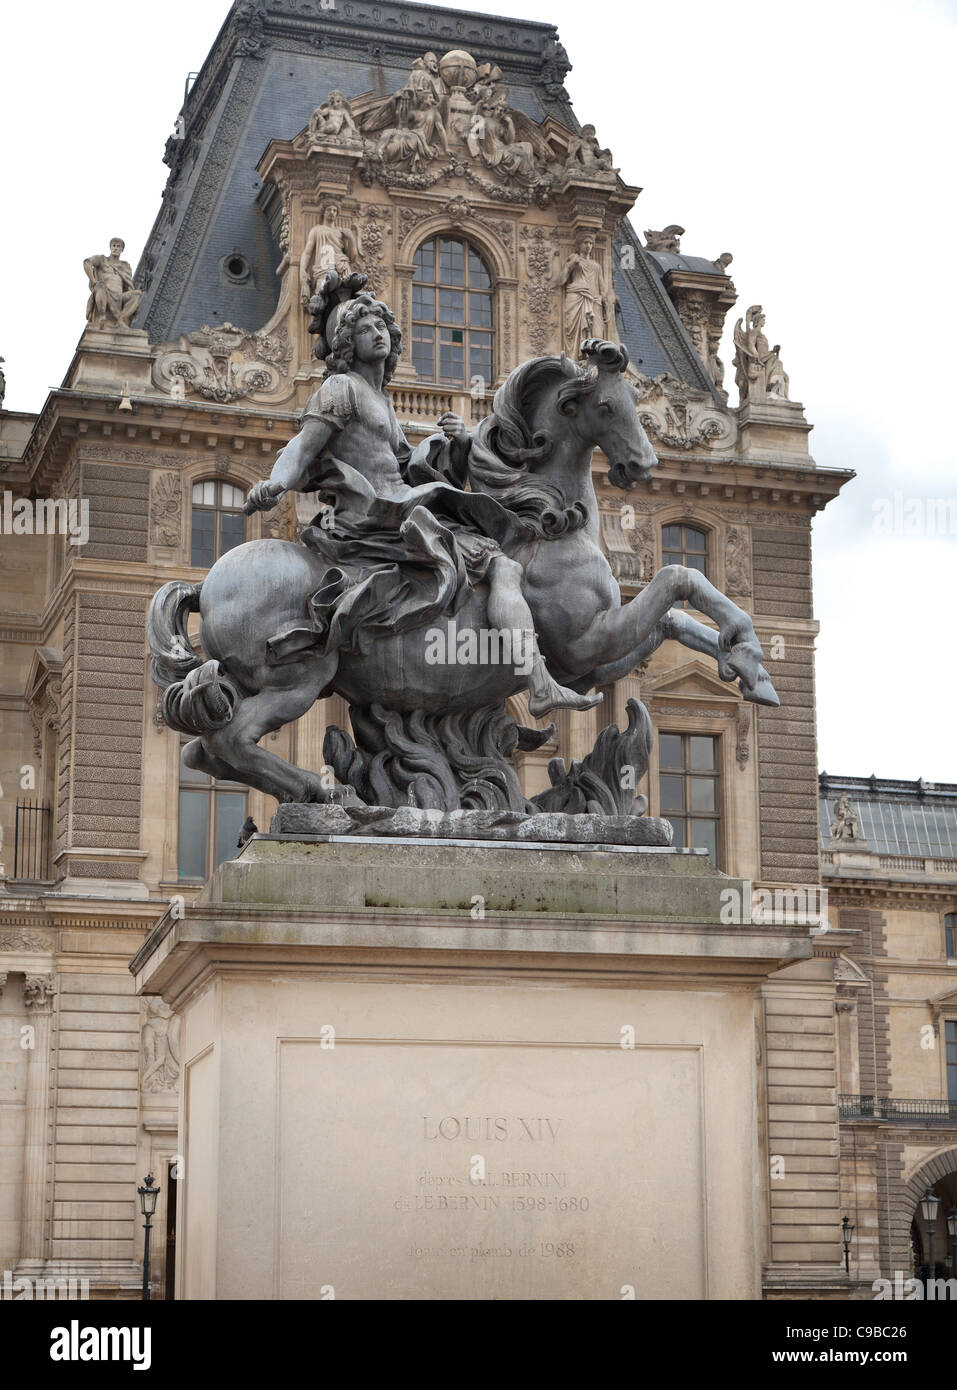 Louis XIV statue équestre sur socle, la cour centrale du Louvre, Paris, France Banque D'Images